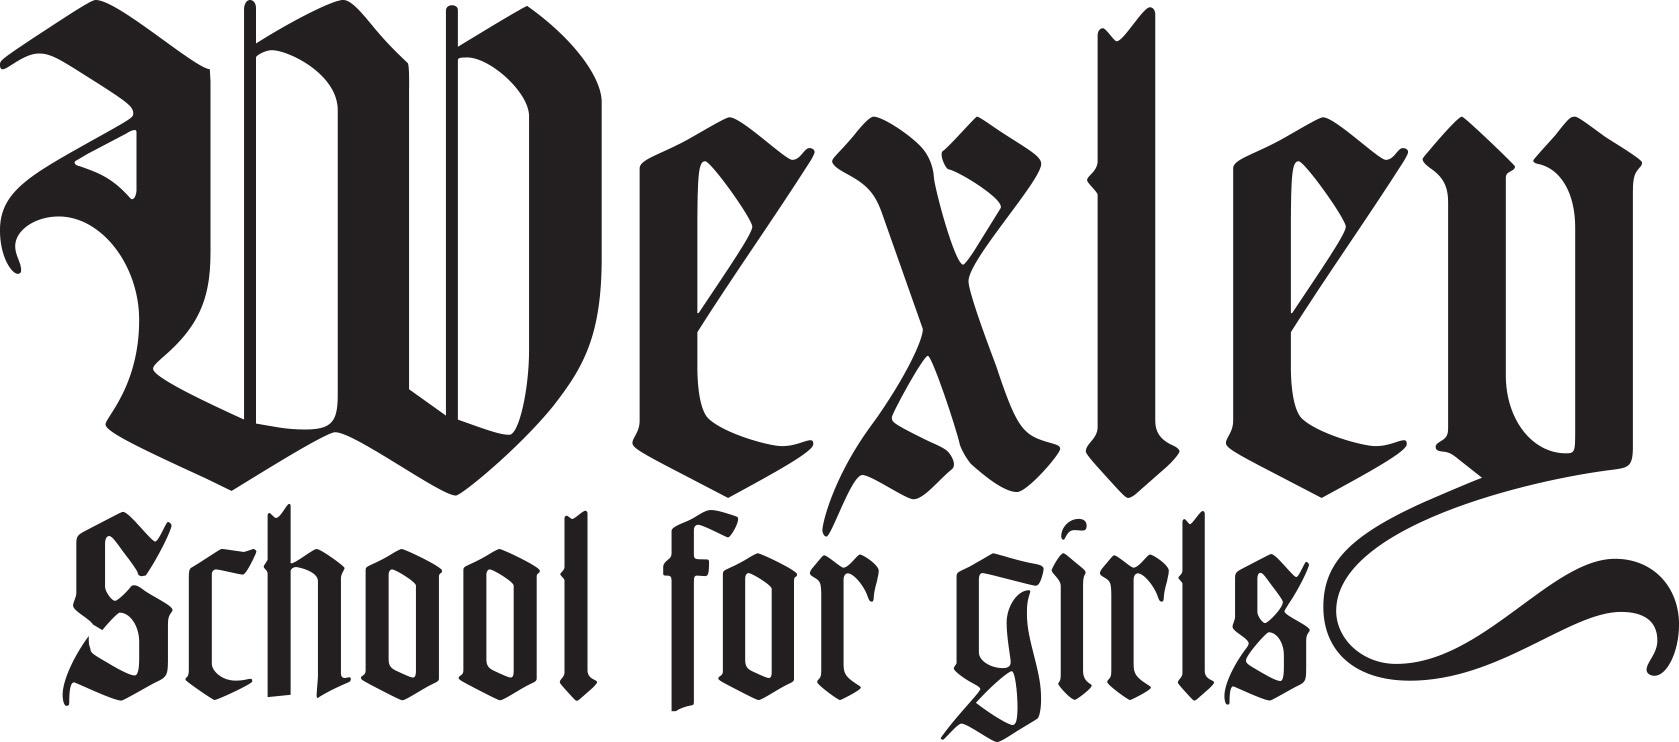 Wexley School for Girls